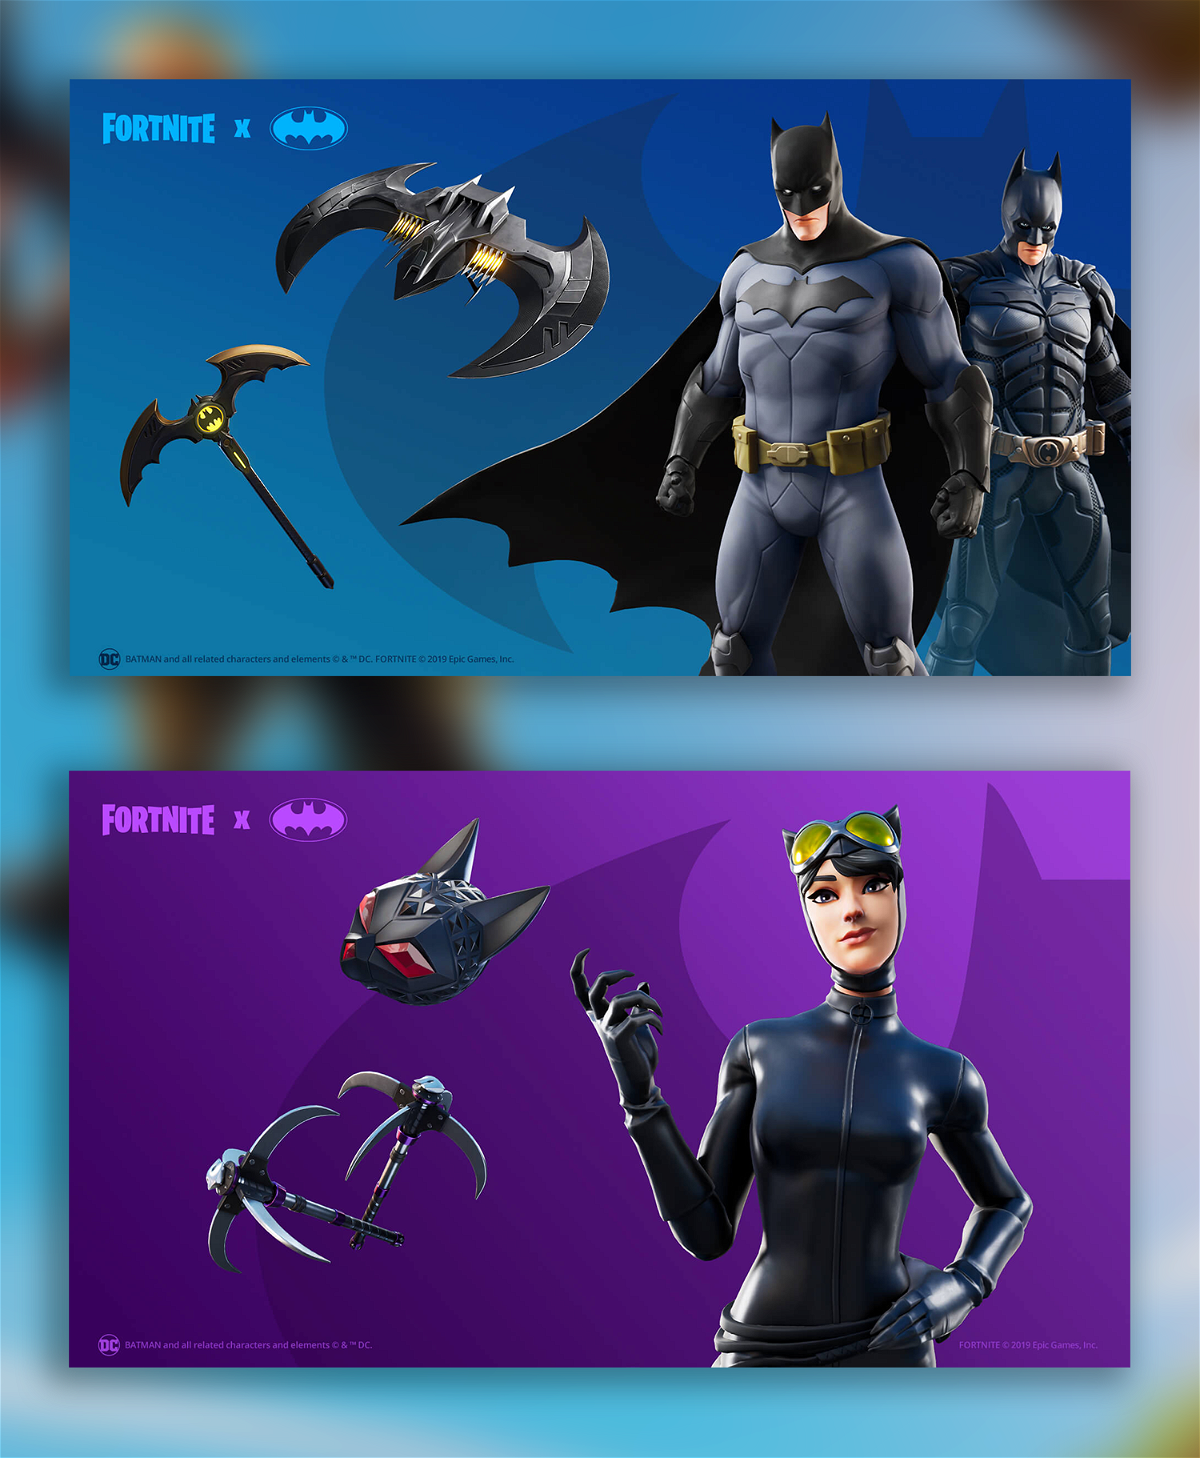 Le skin di Batman e Catwoman per l'evento Fortnite X Batman